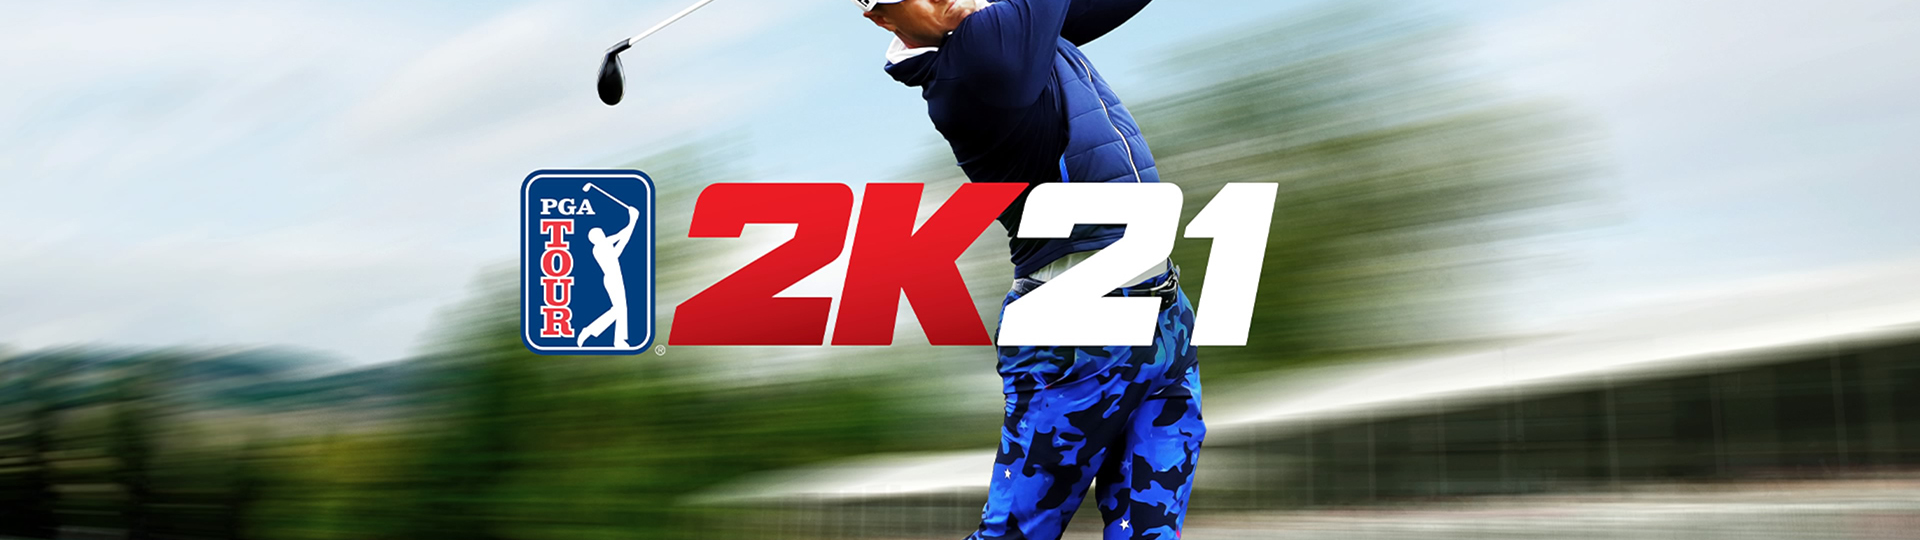 PGA Tour 2K21 - virtuálním golfistou | Recenze